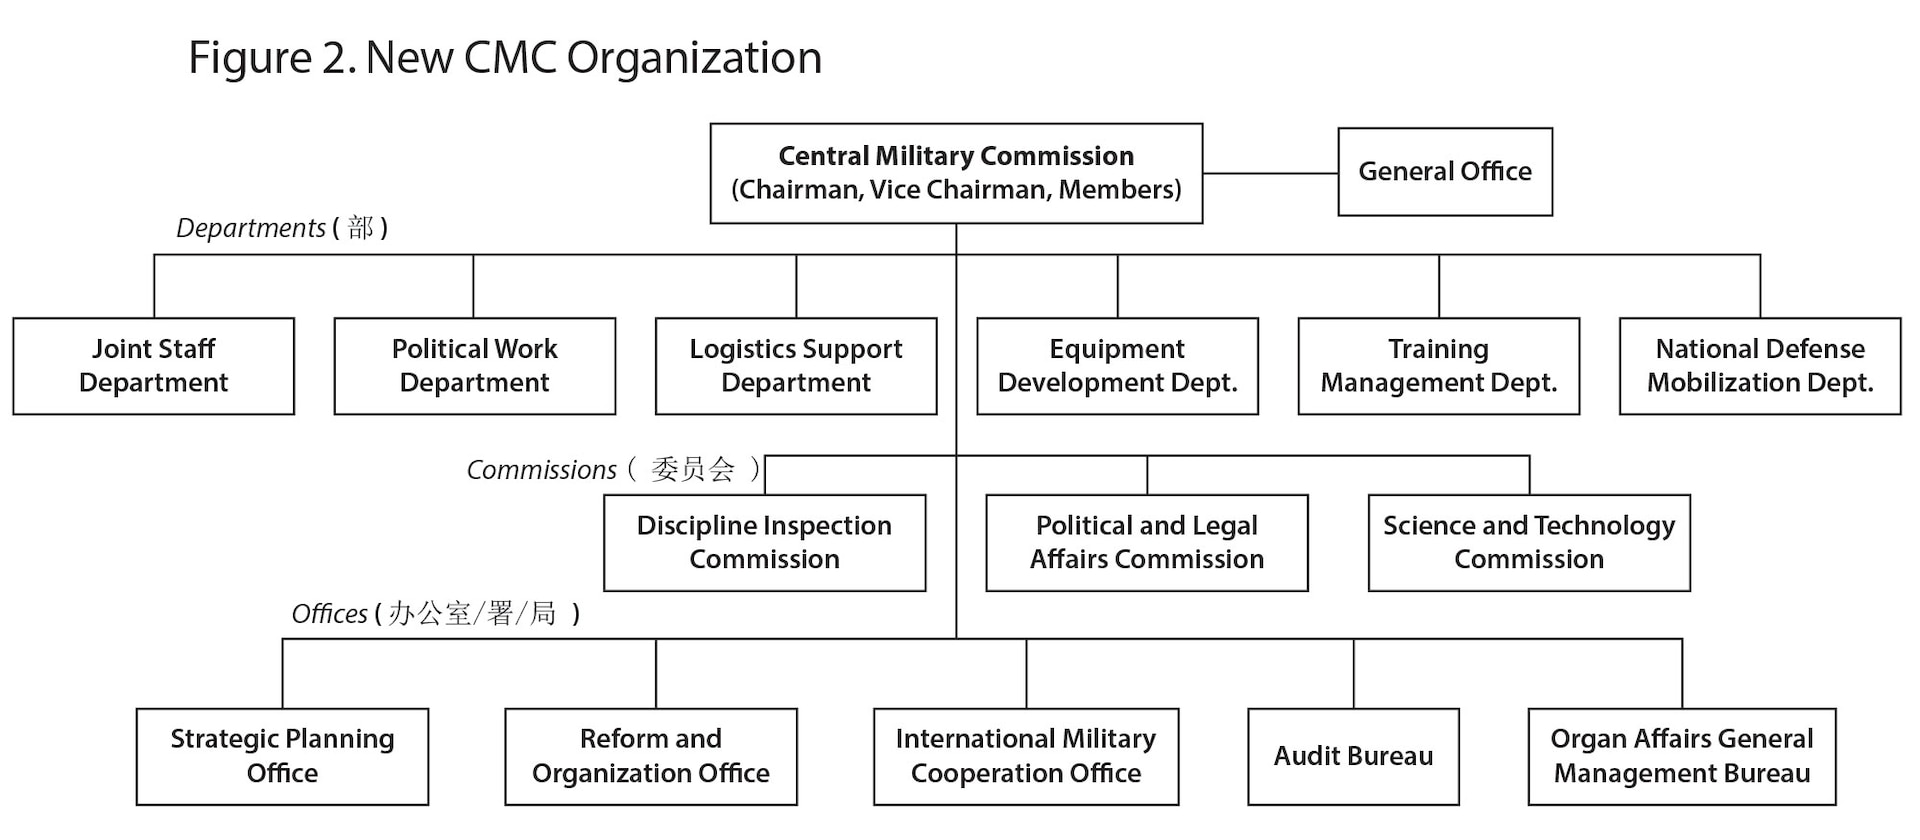 Figure 2. New CMC Organization